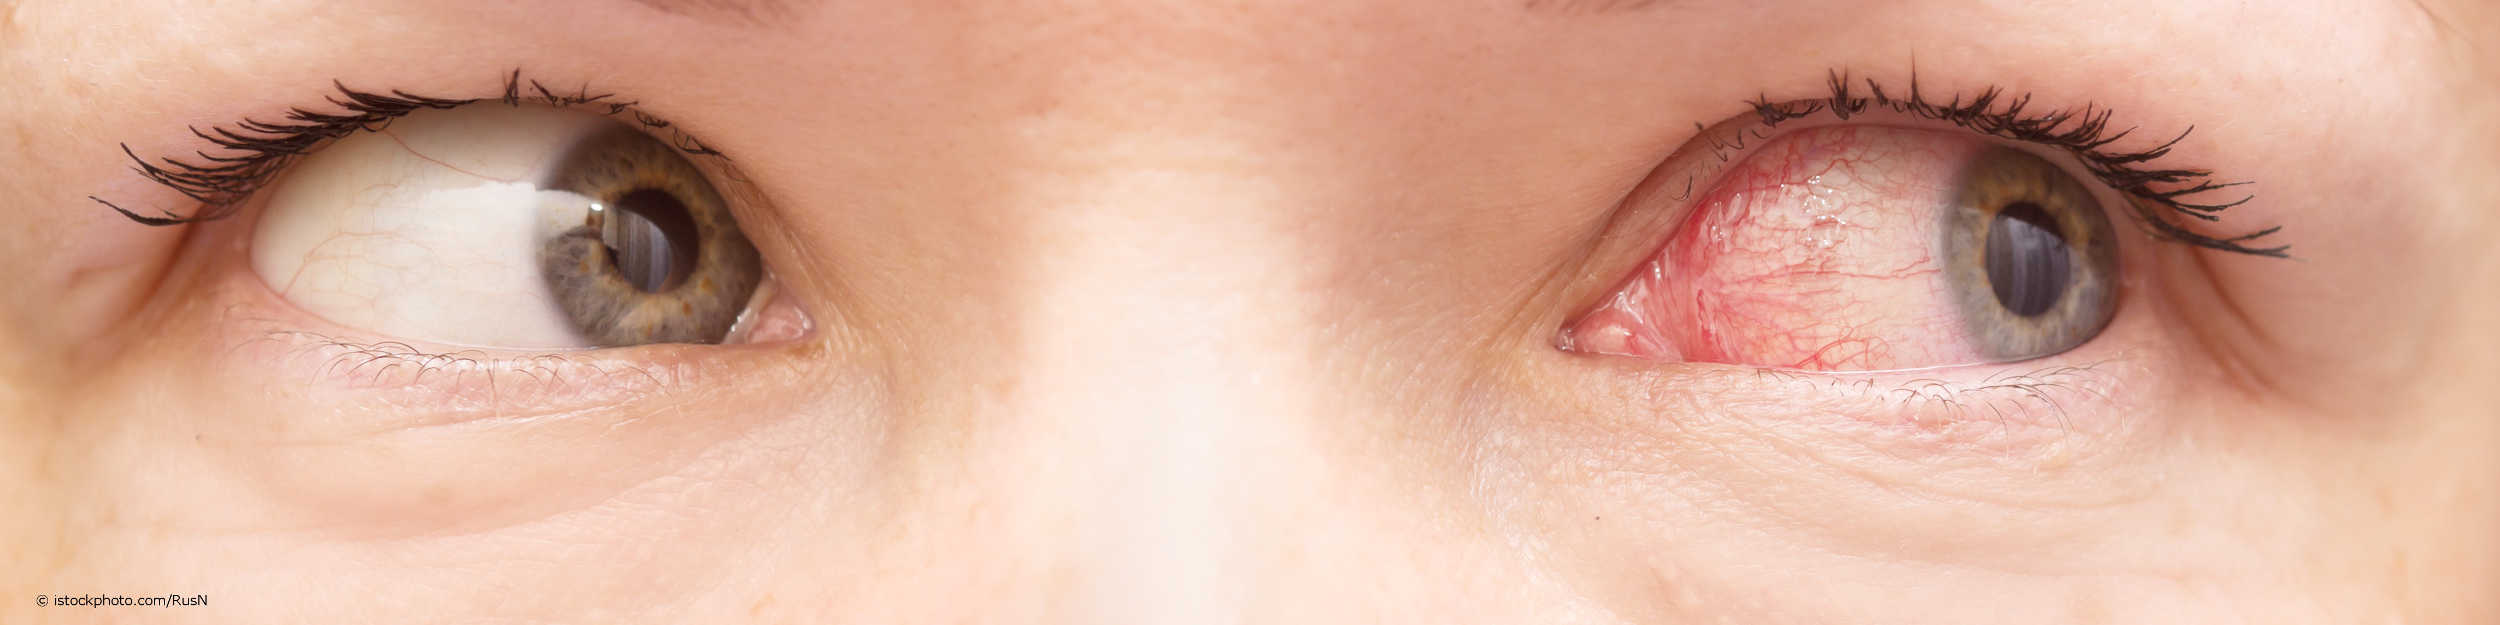 Gerötete Augen sind typische Symptome einer Bindehautentzündung.